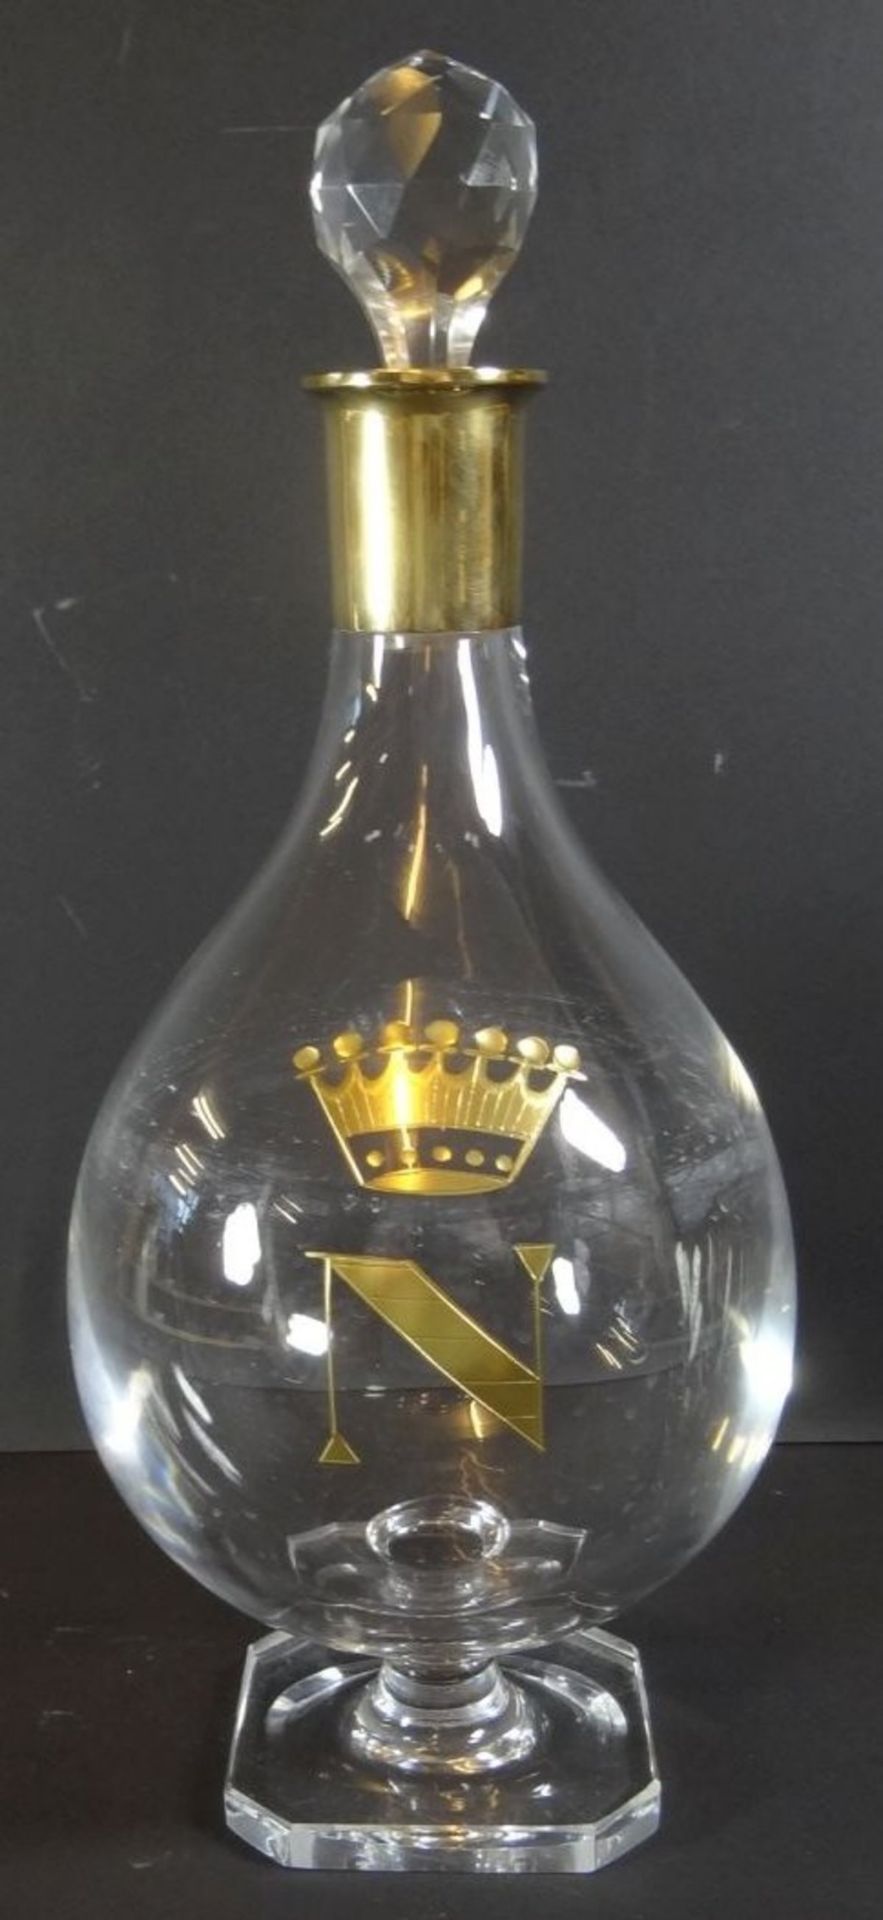 Kristall-Karaffe auf Stand, Silberhals-925-, vergoldet, auf Stand, H-31 cm, Krone mit "N", Stöpsel